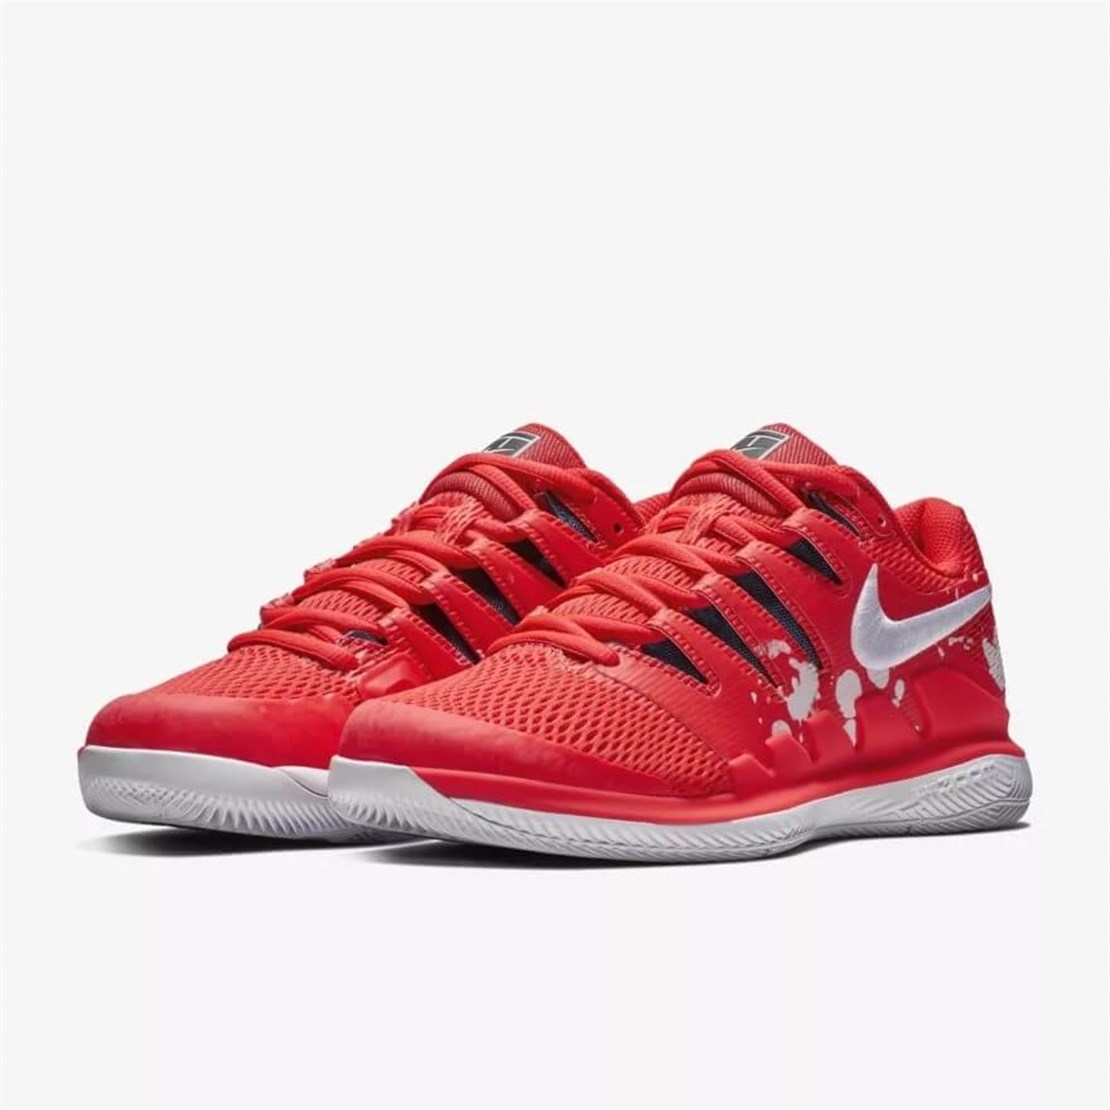 Nike Air Zoom Vapor X Kadın Tenis Ayakkabısı | Kırmızı/Beyaz